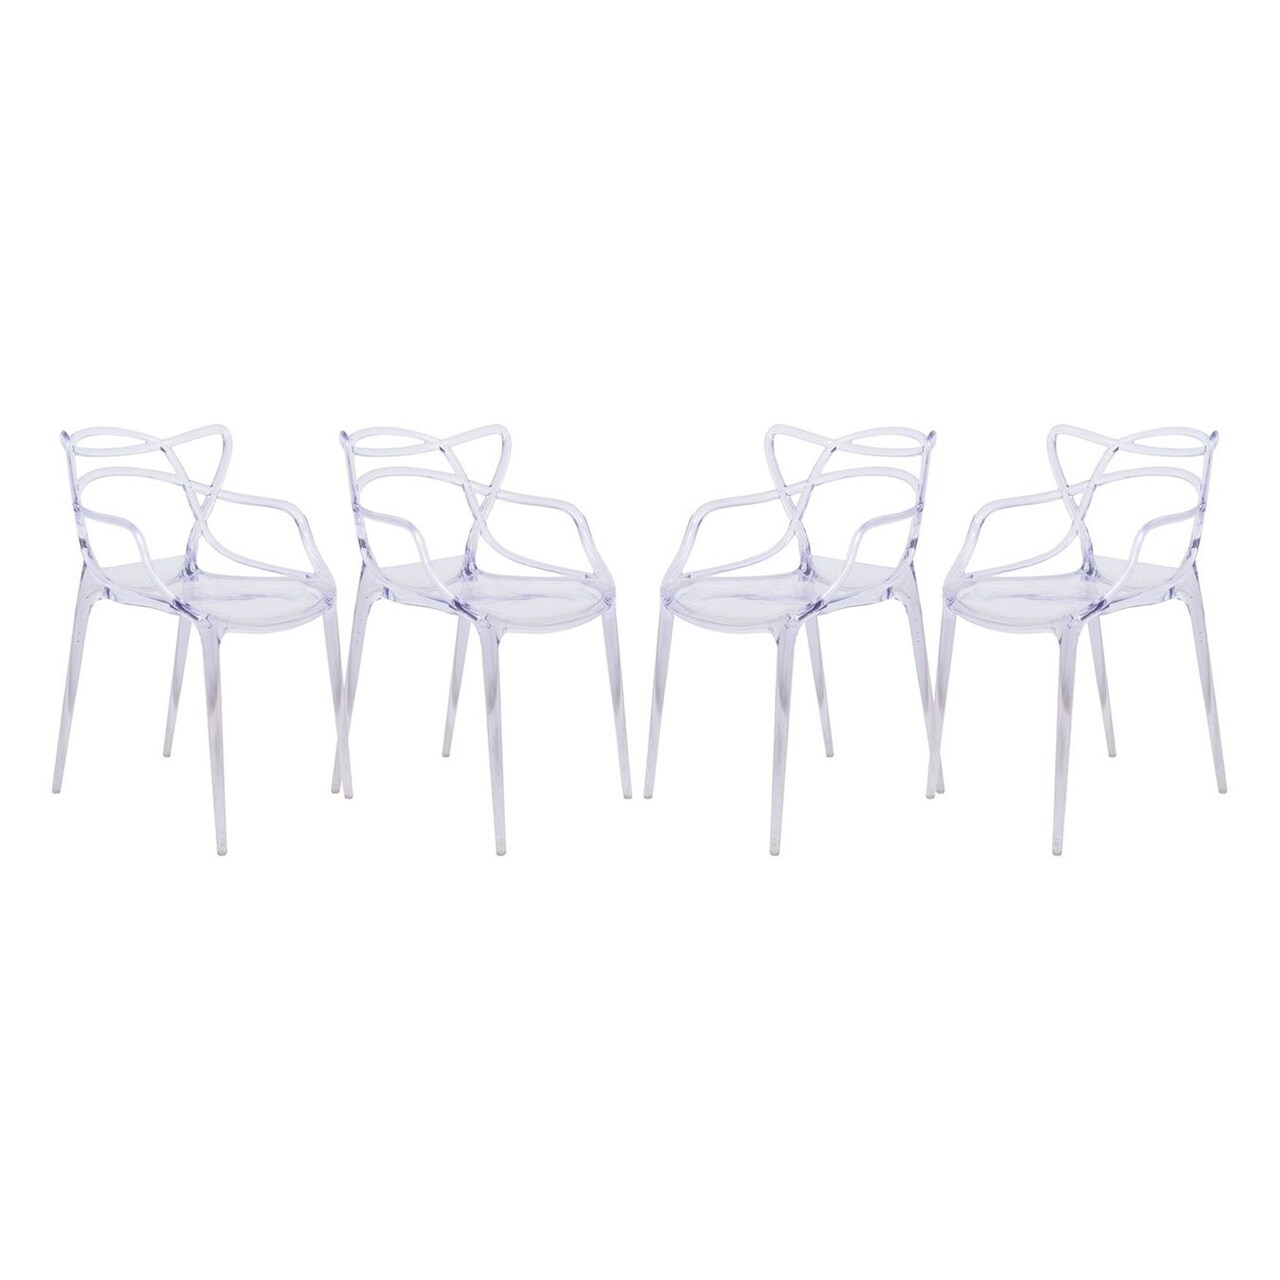 LeisureMod Milan Modern Wire Design Chair, Set of 4